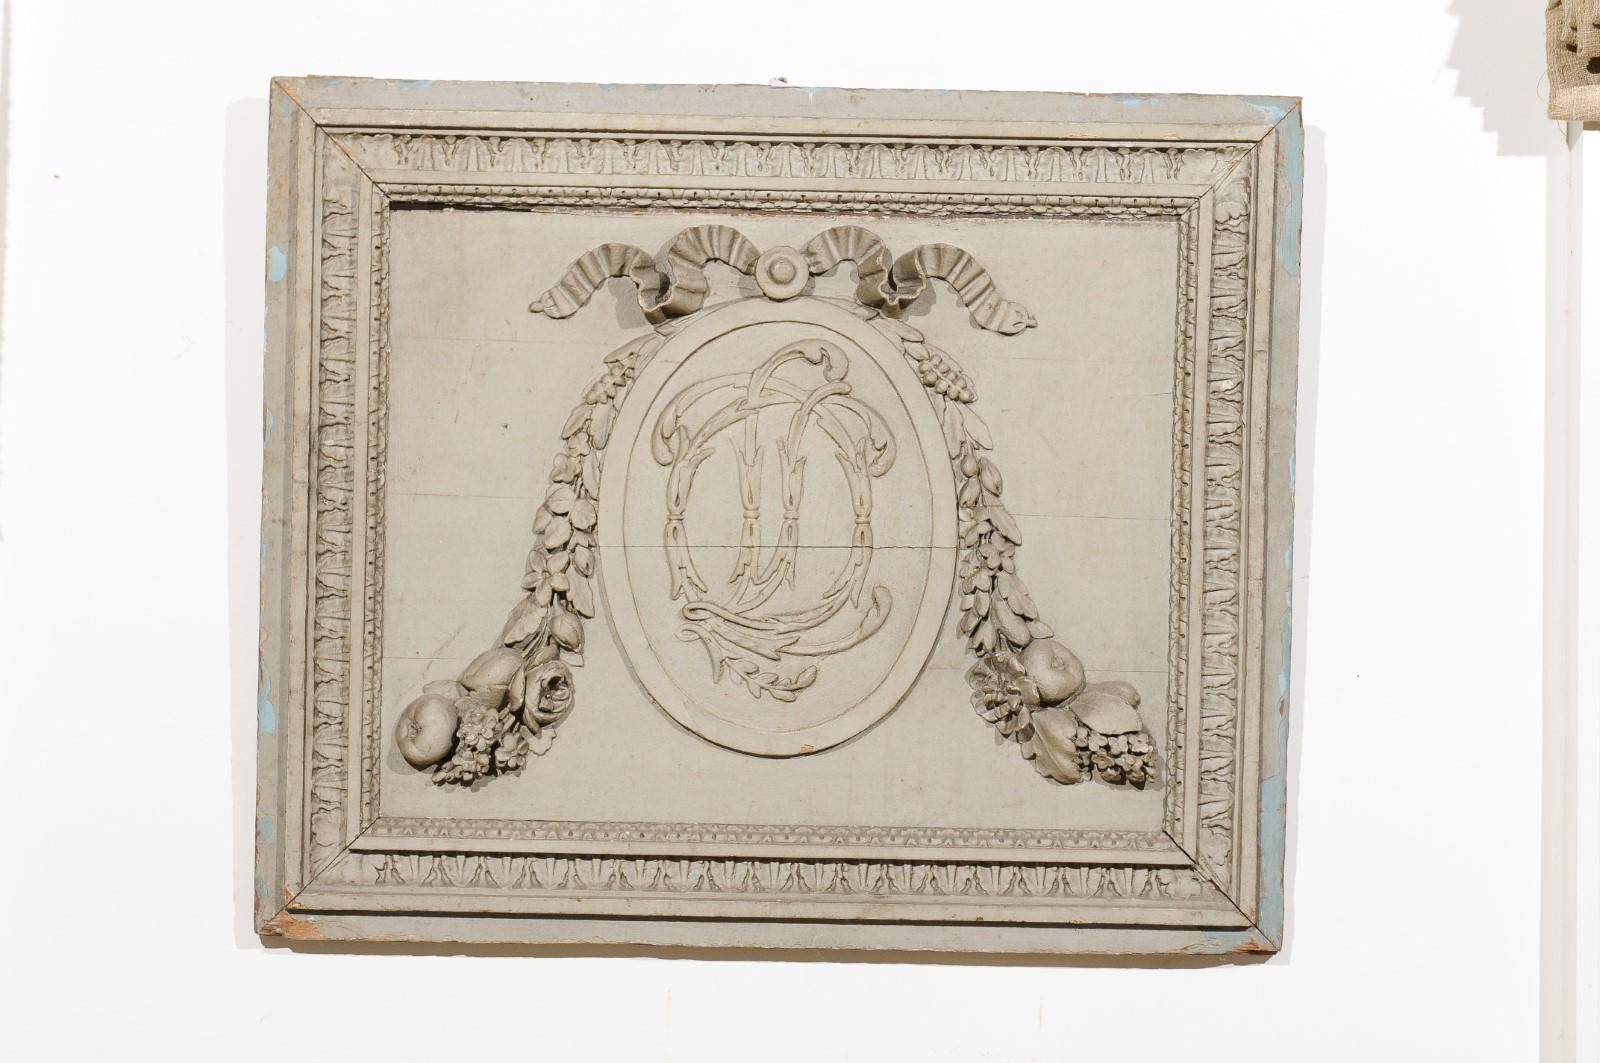 Panneau de boiserie en bois peint et sculpté à la main d'époque Louis XVI, datant de la fin du XVIIIe siècle, avec des motifs de monogrammes, de guirlandes et de fruits. Née en France durant la seconde moitié du XVIIIe siècle, cette exquise boiserie